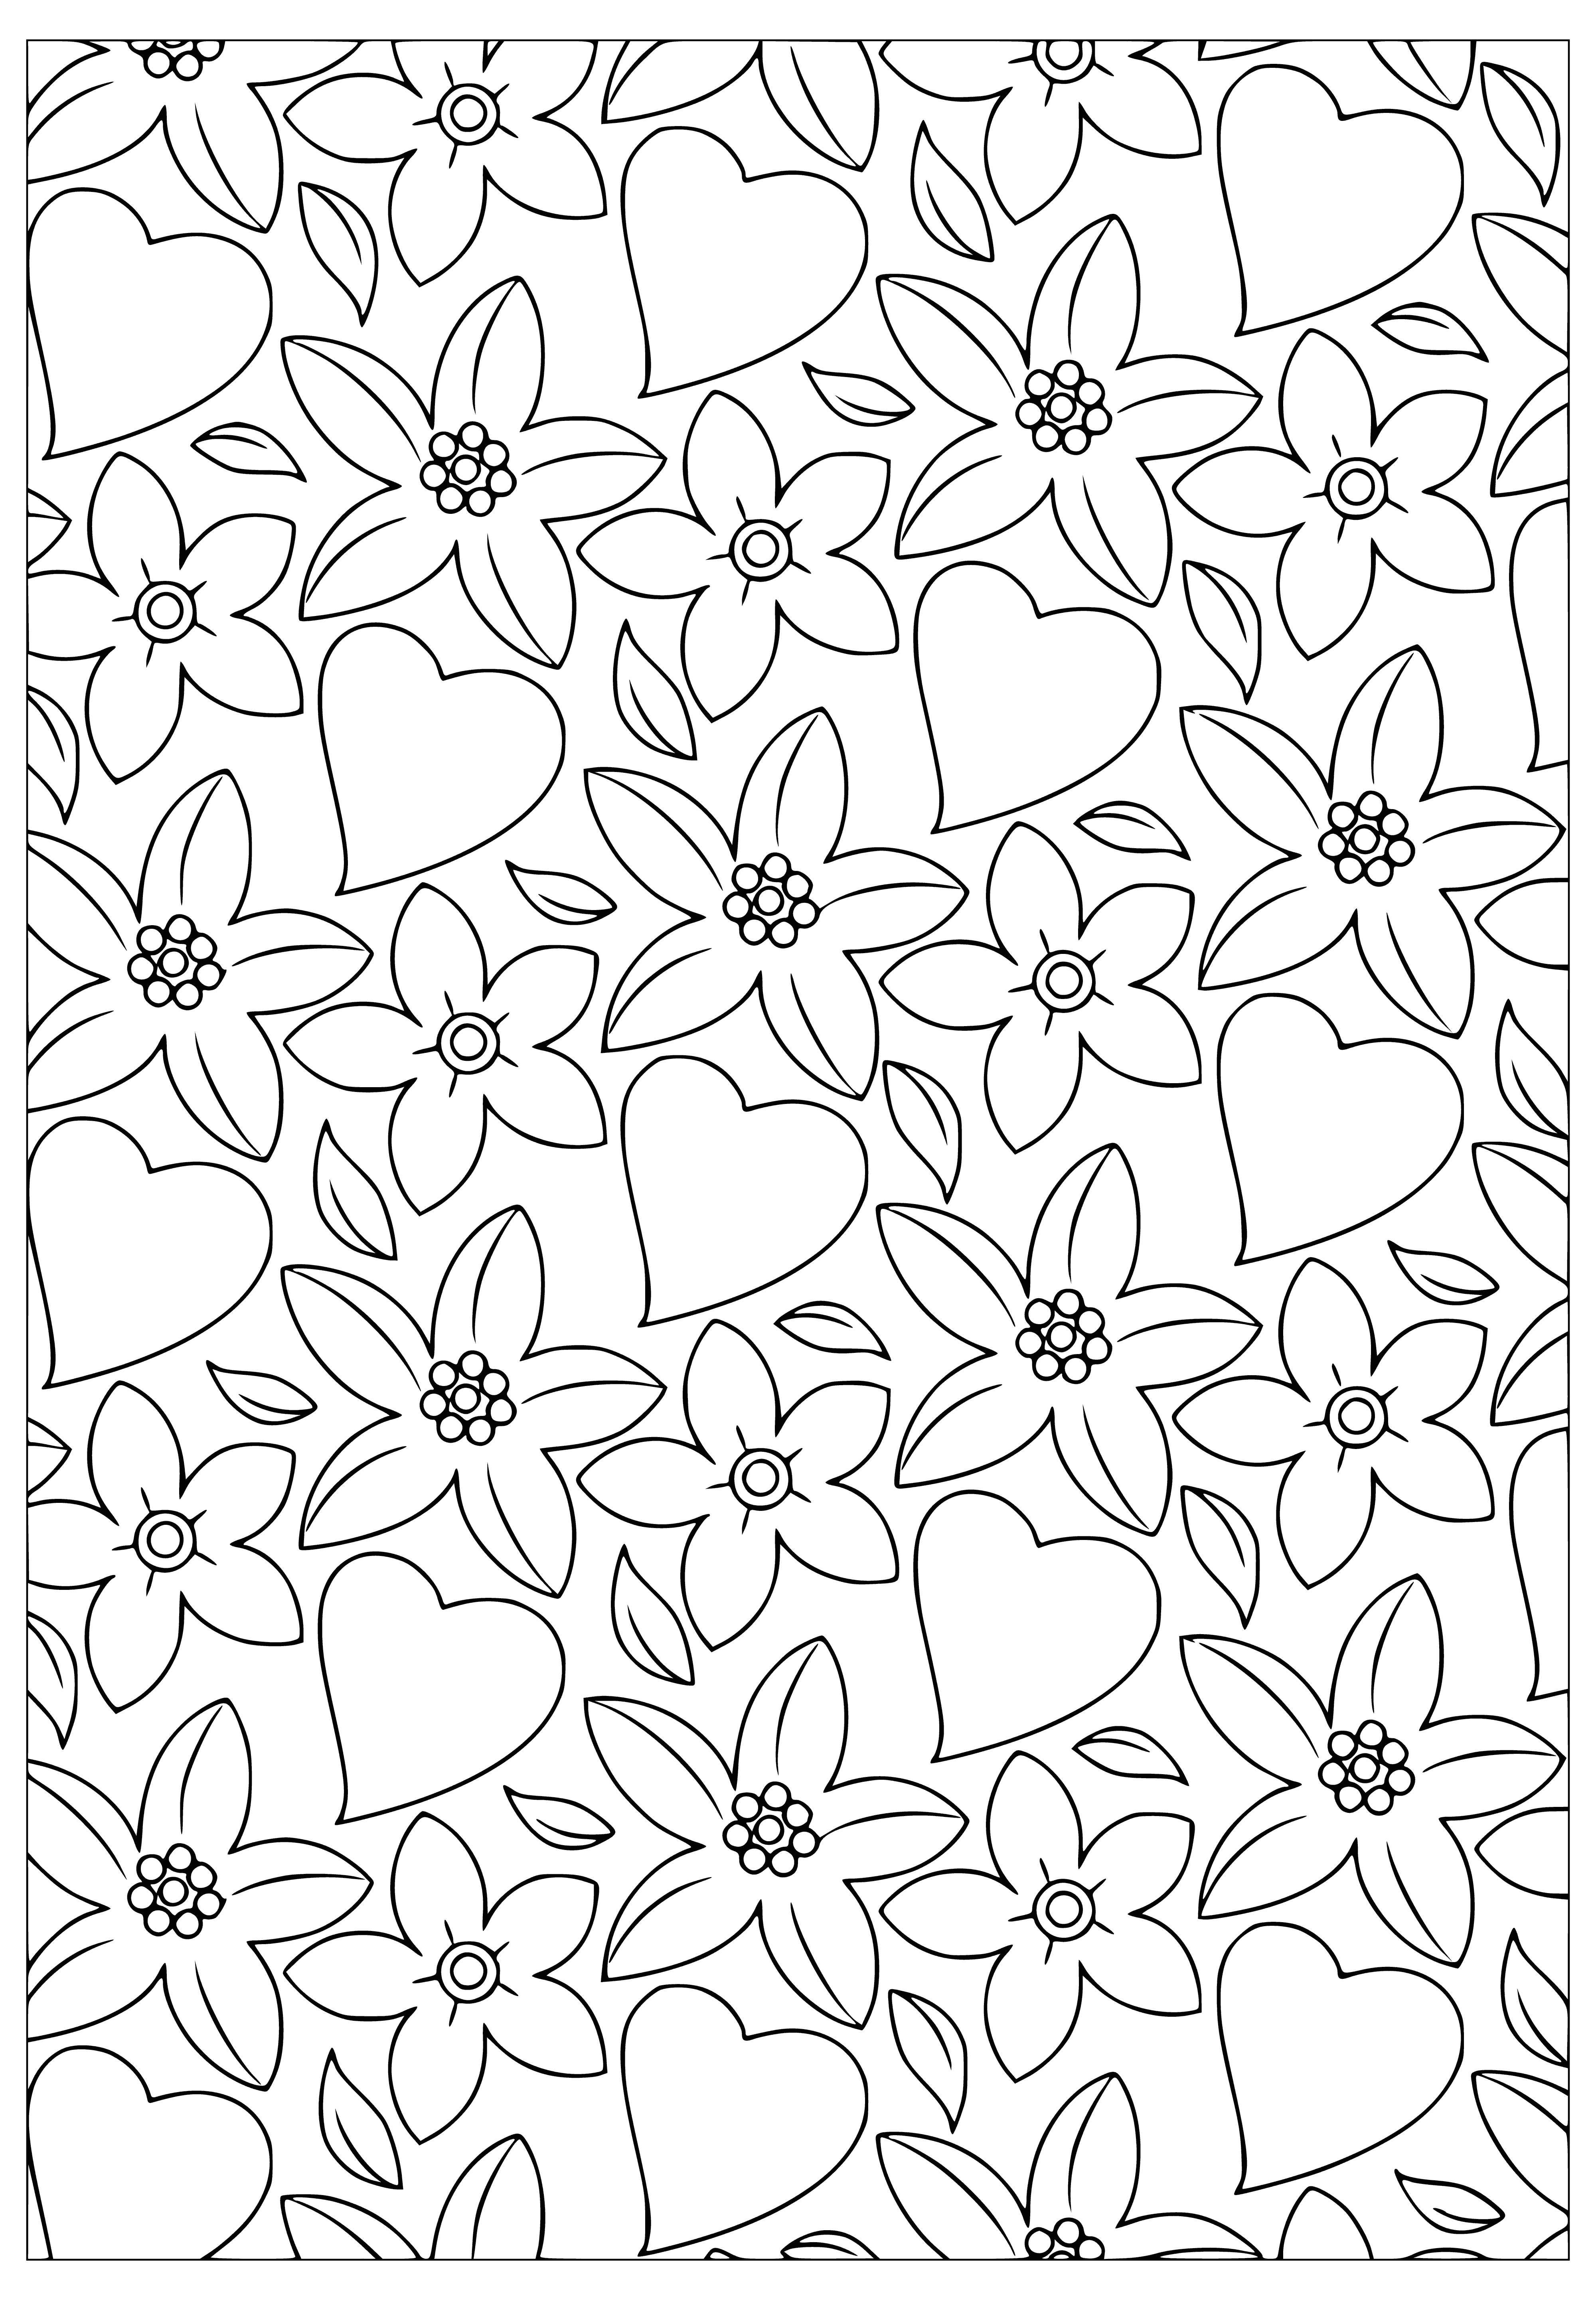 Kalpler ve çiçekler boyama sayfası